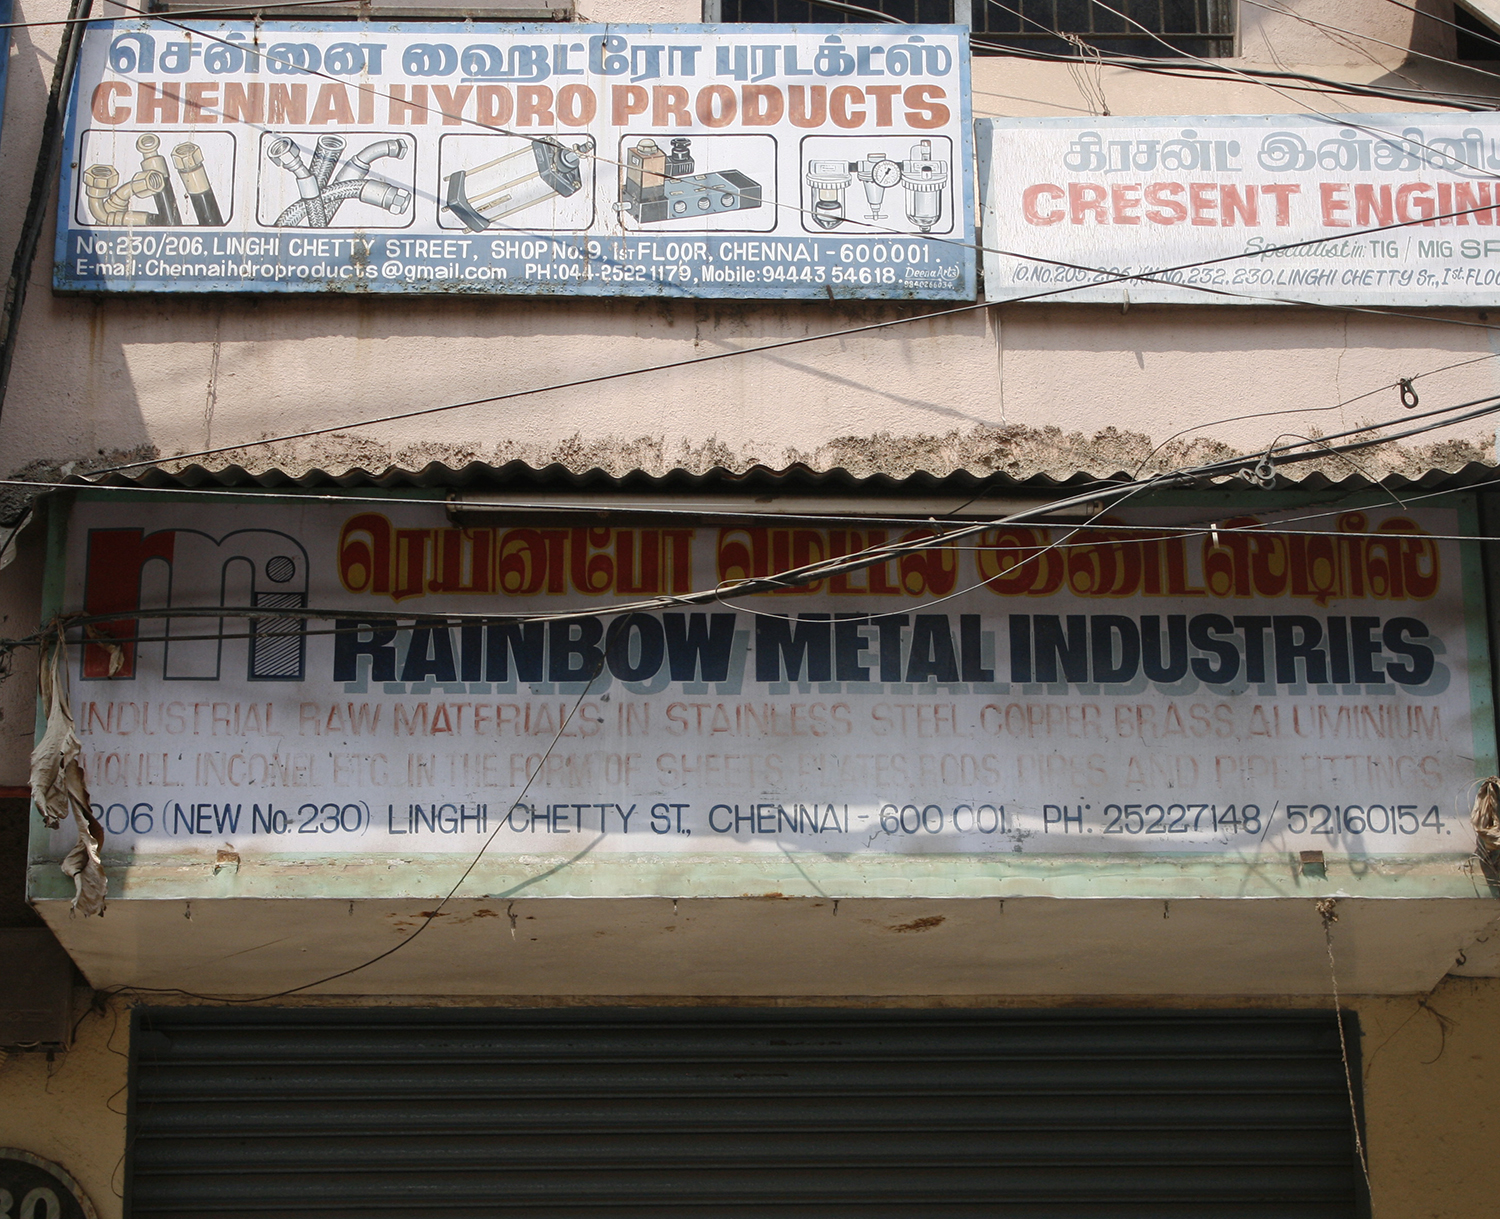 Rainbow Metal Industries